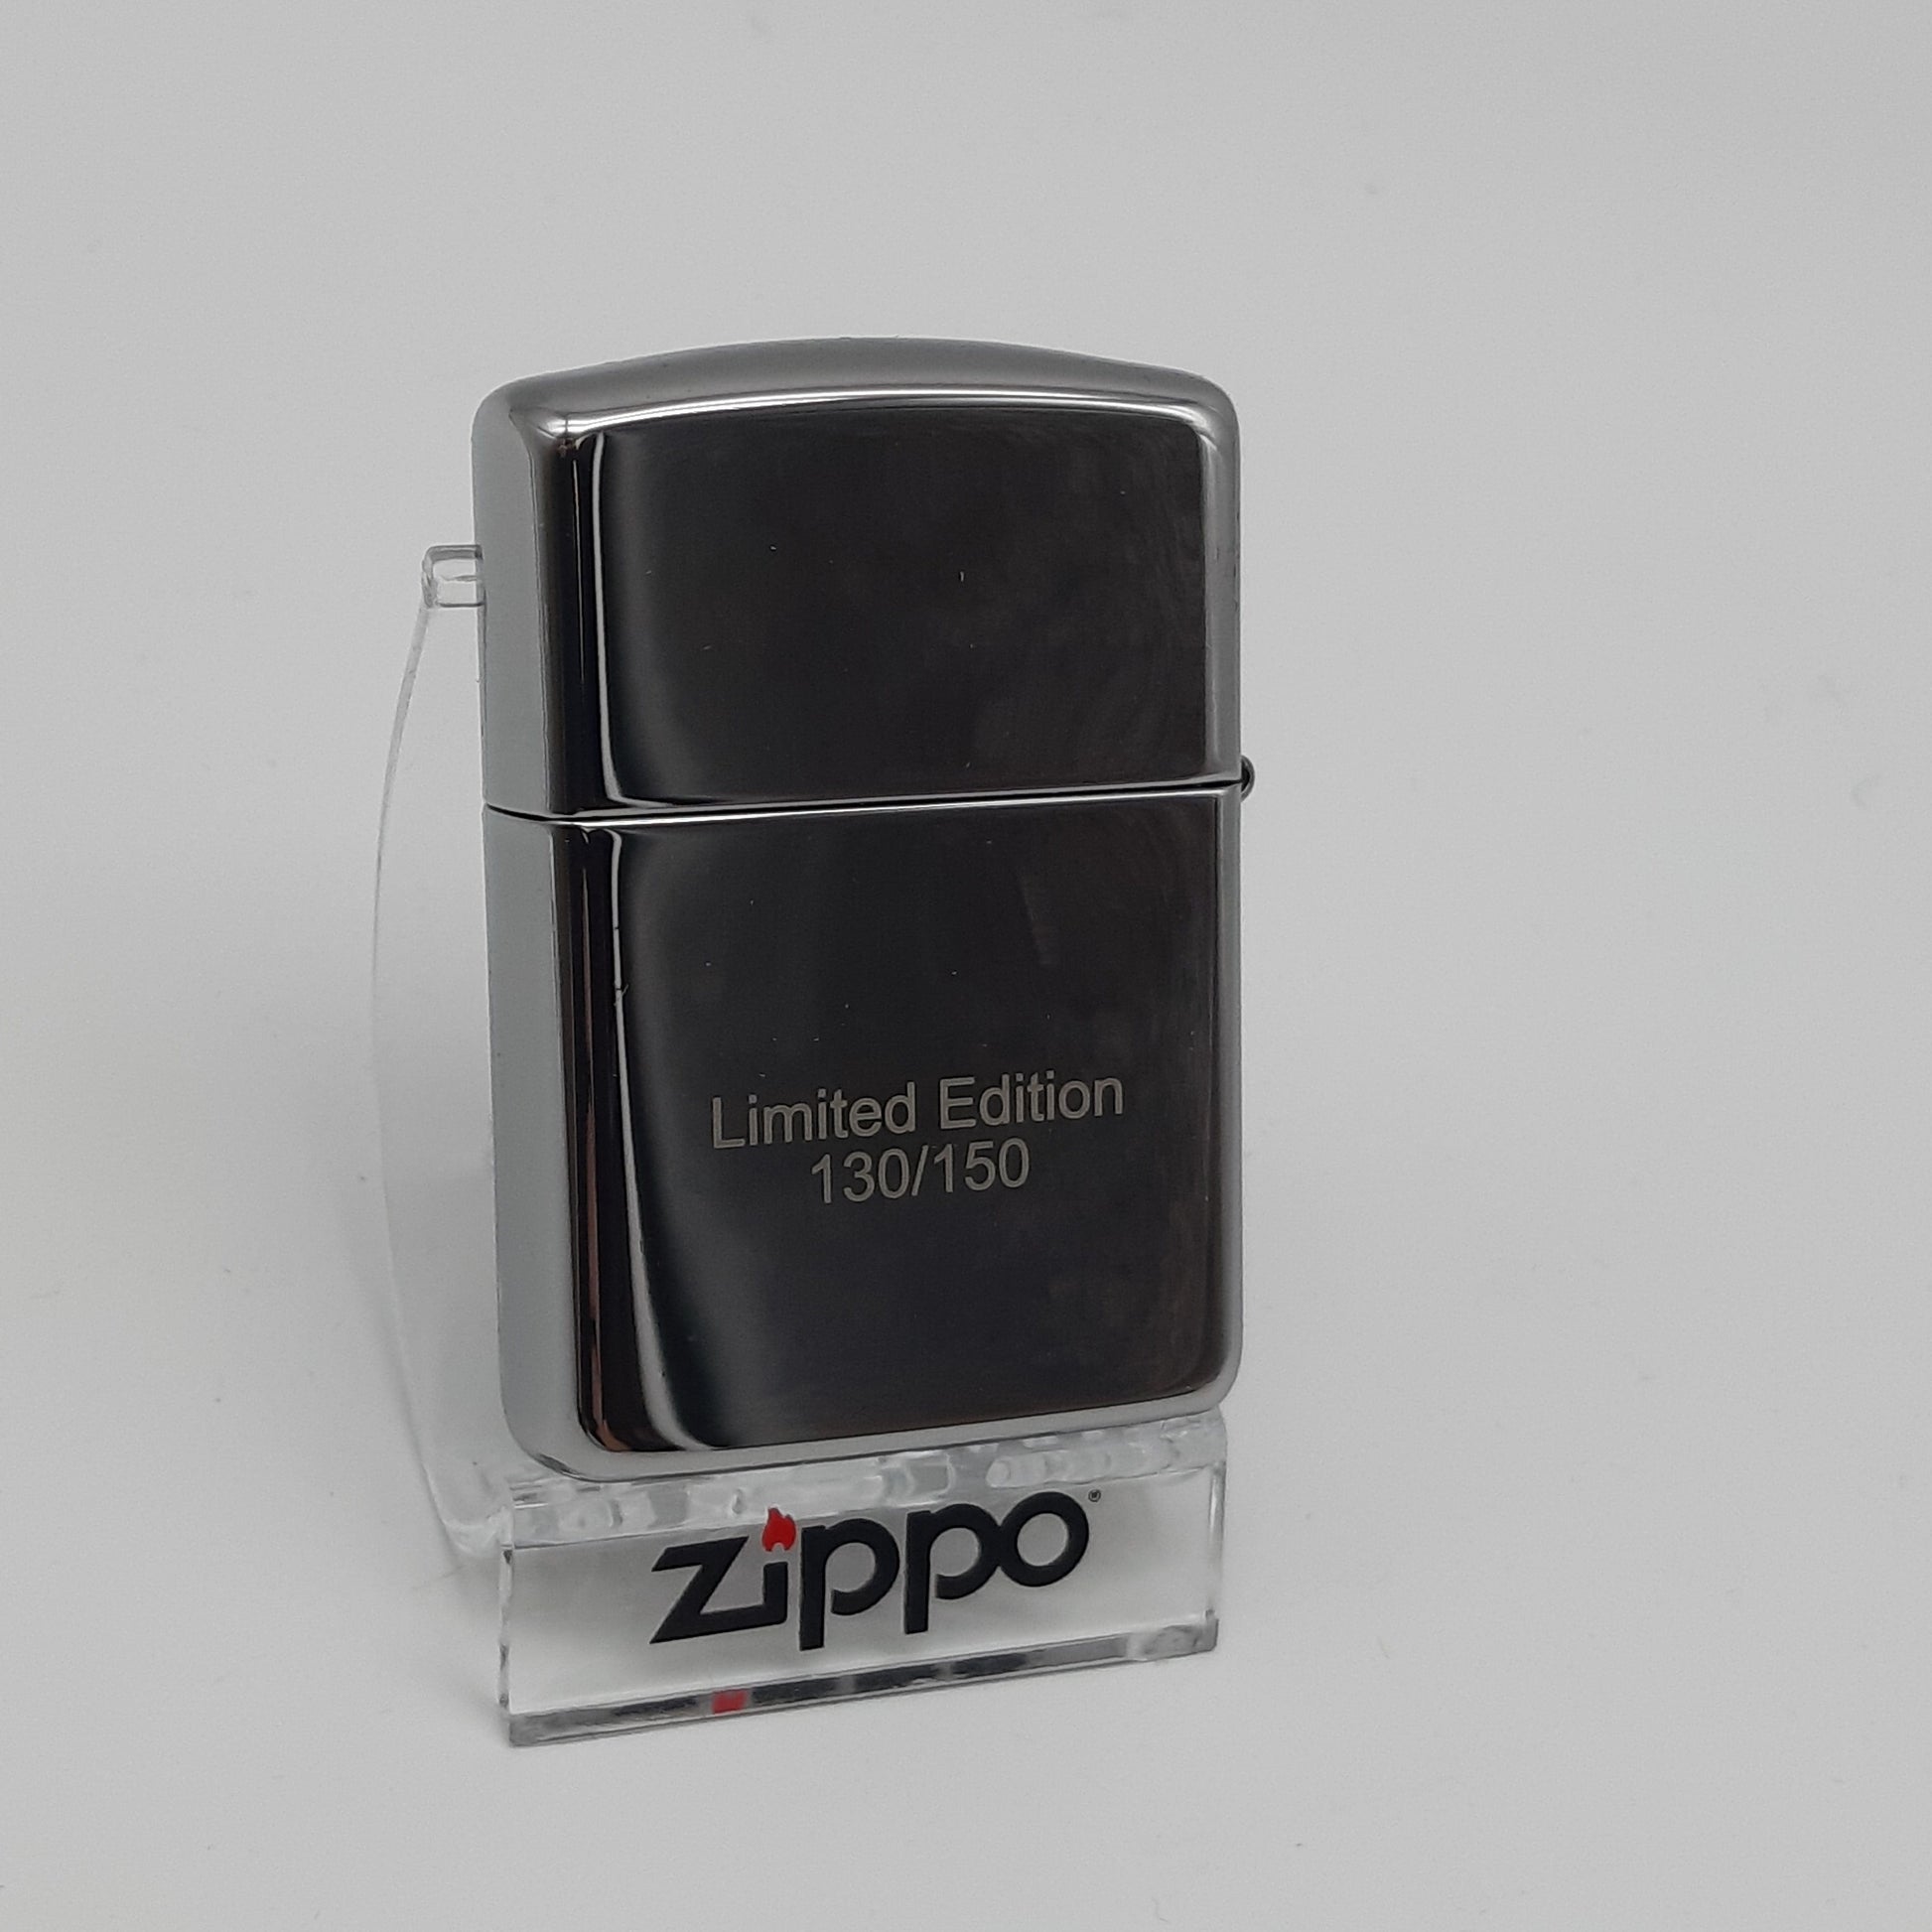 Zippo Zippo Benzinfeuerzeug Armor Case Limited Edition xxx/150